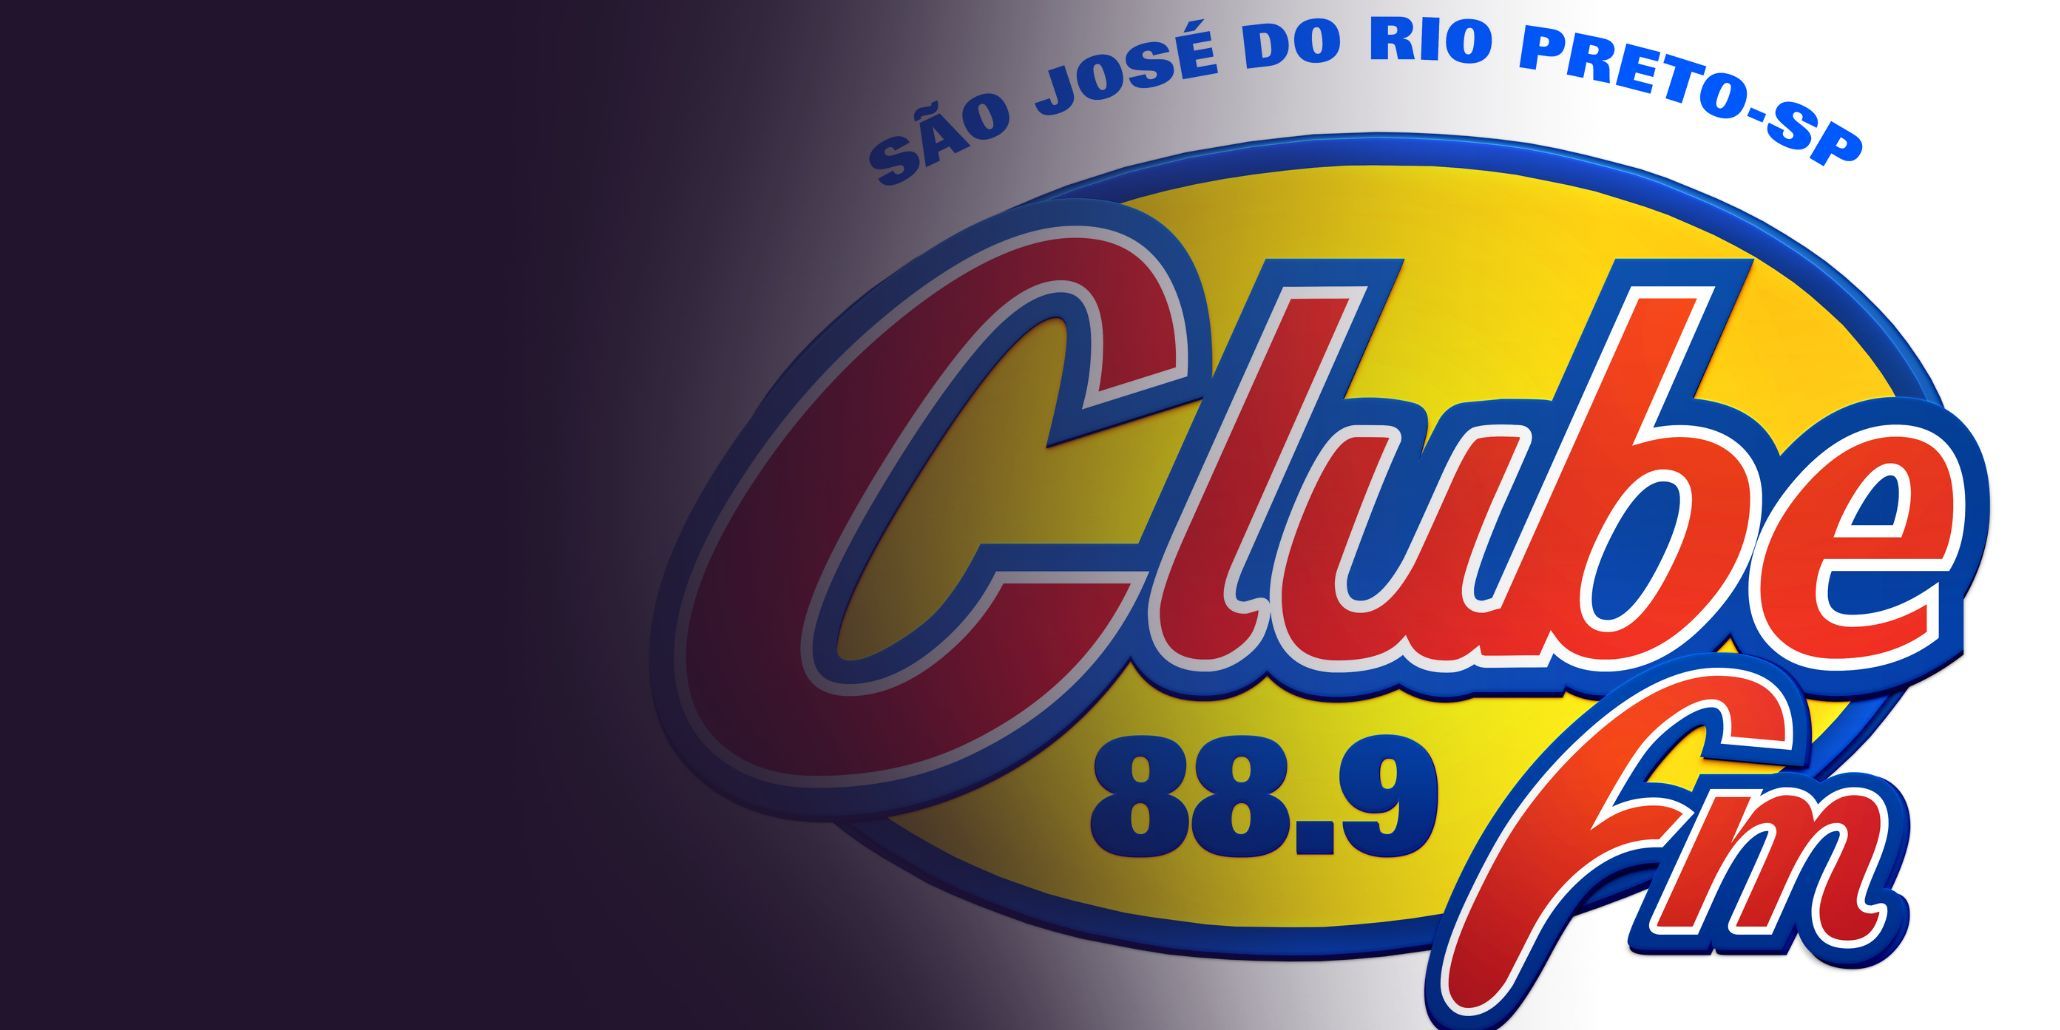 Rede Clube FM anuncia troca de frequência em São José do Rio Preto